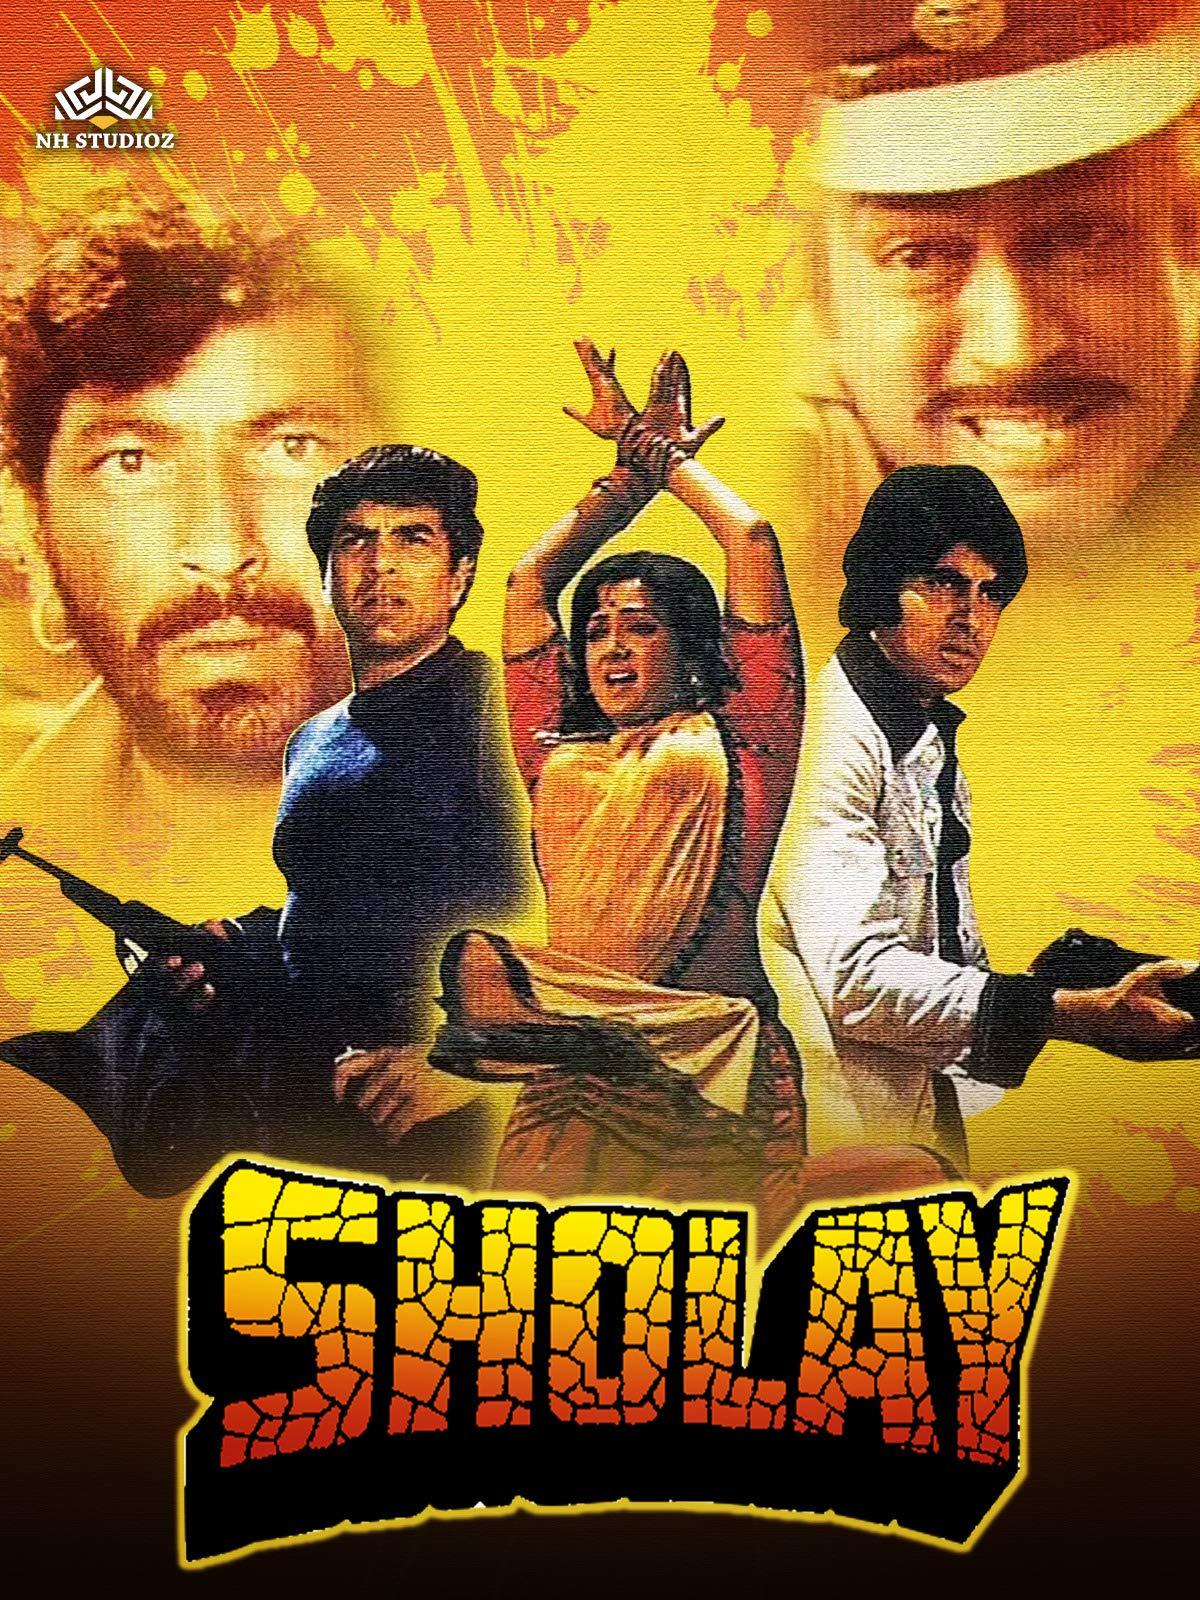 sholay-1975-4099-poster.jpg